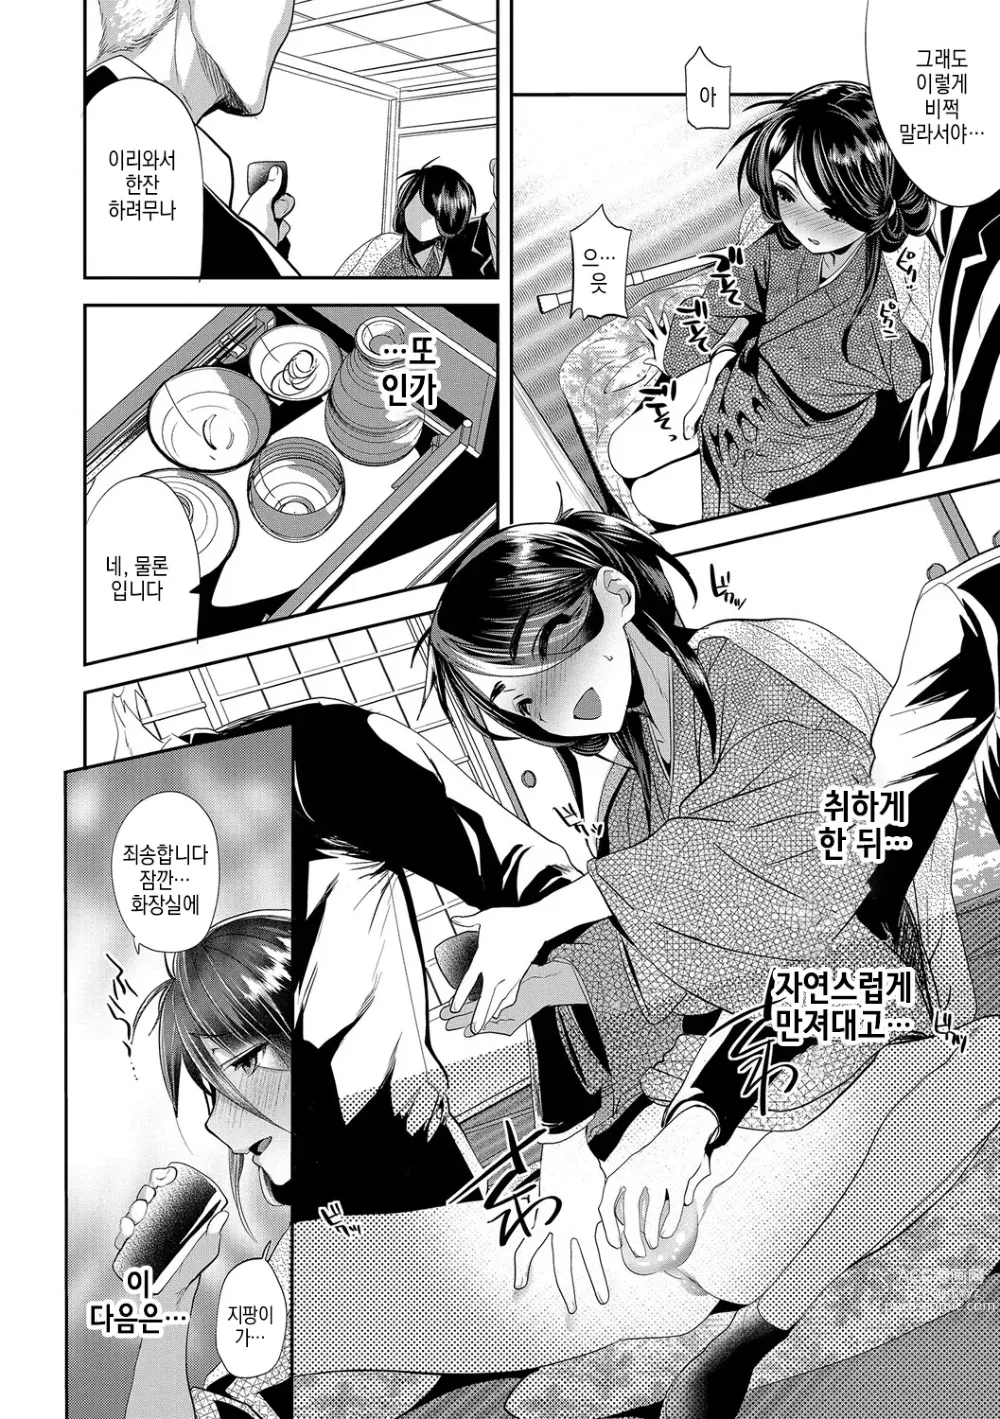 Page 5 of manga 감간접대 -전편-